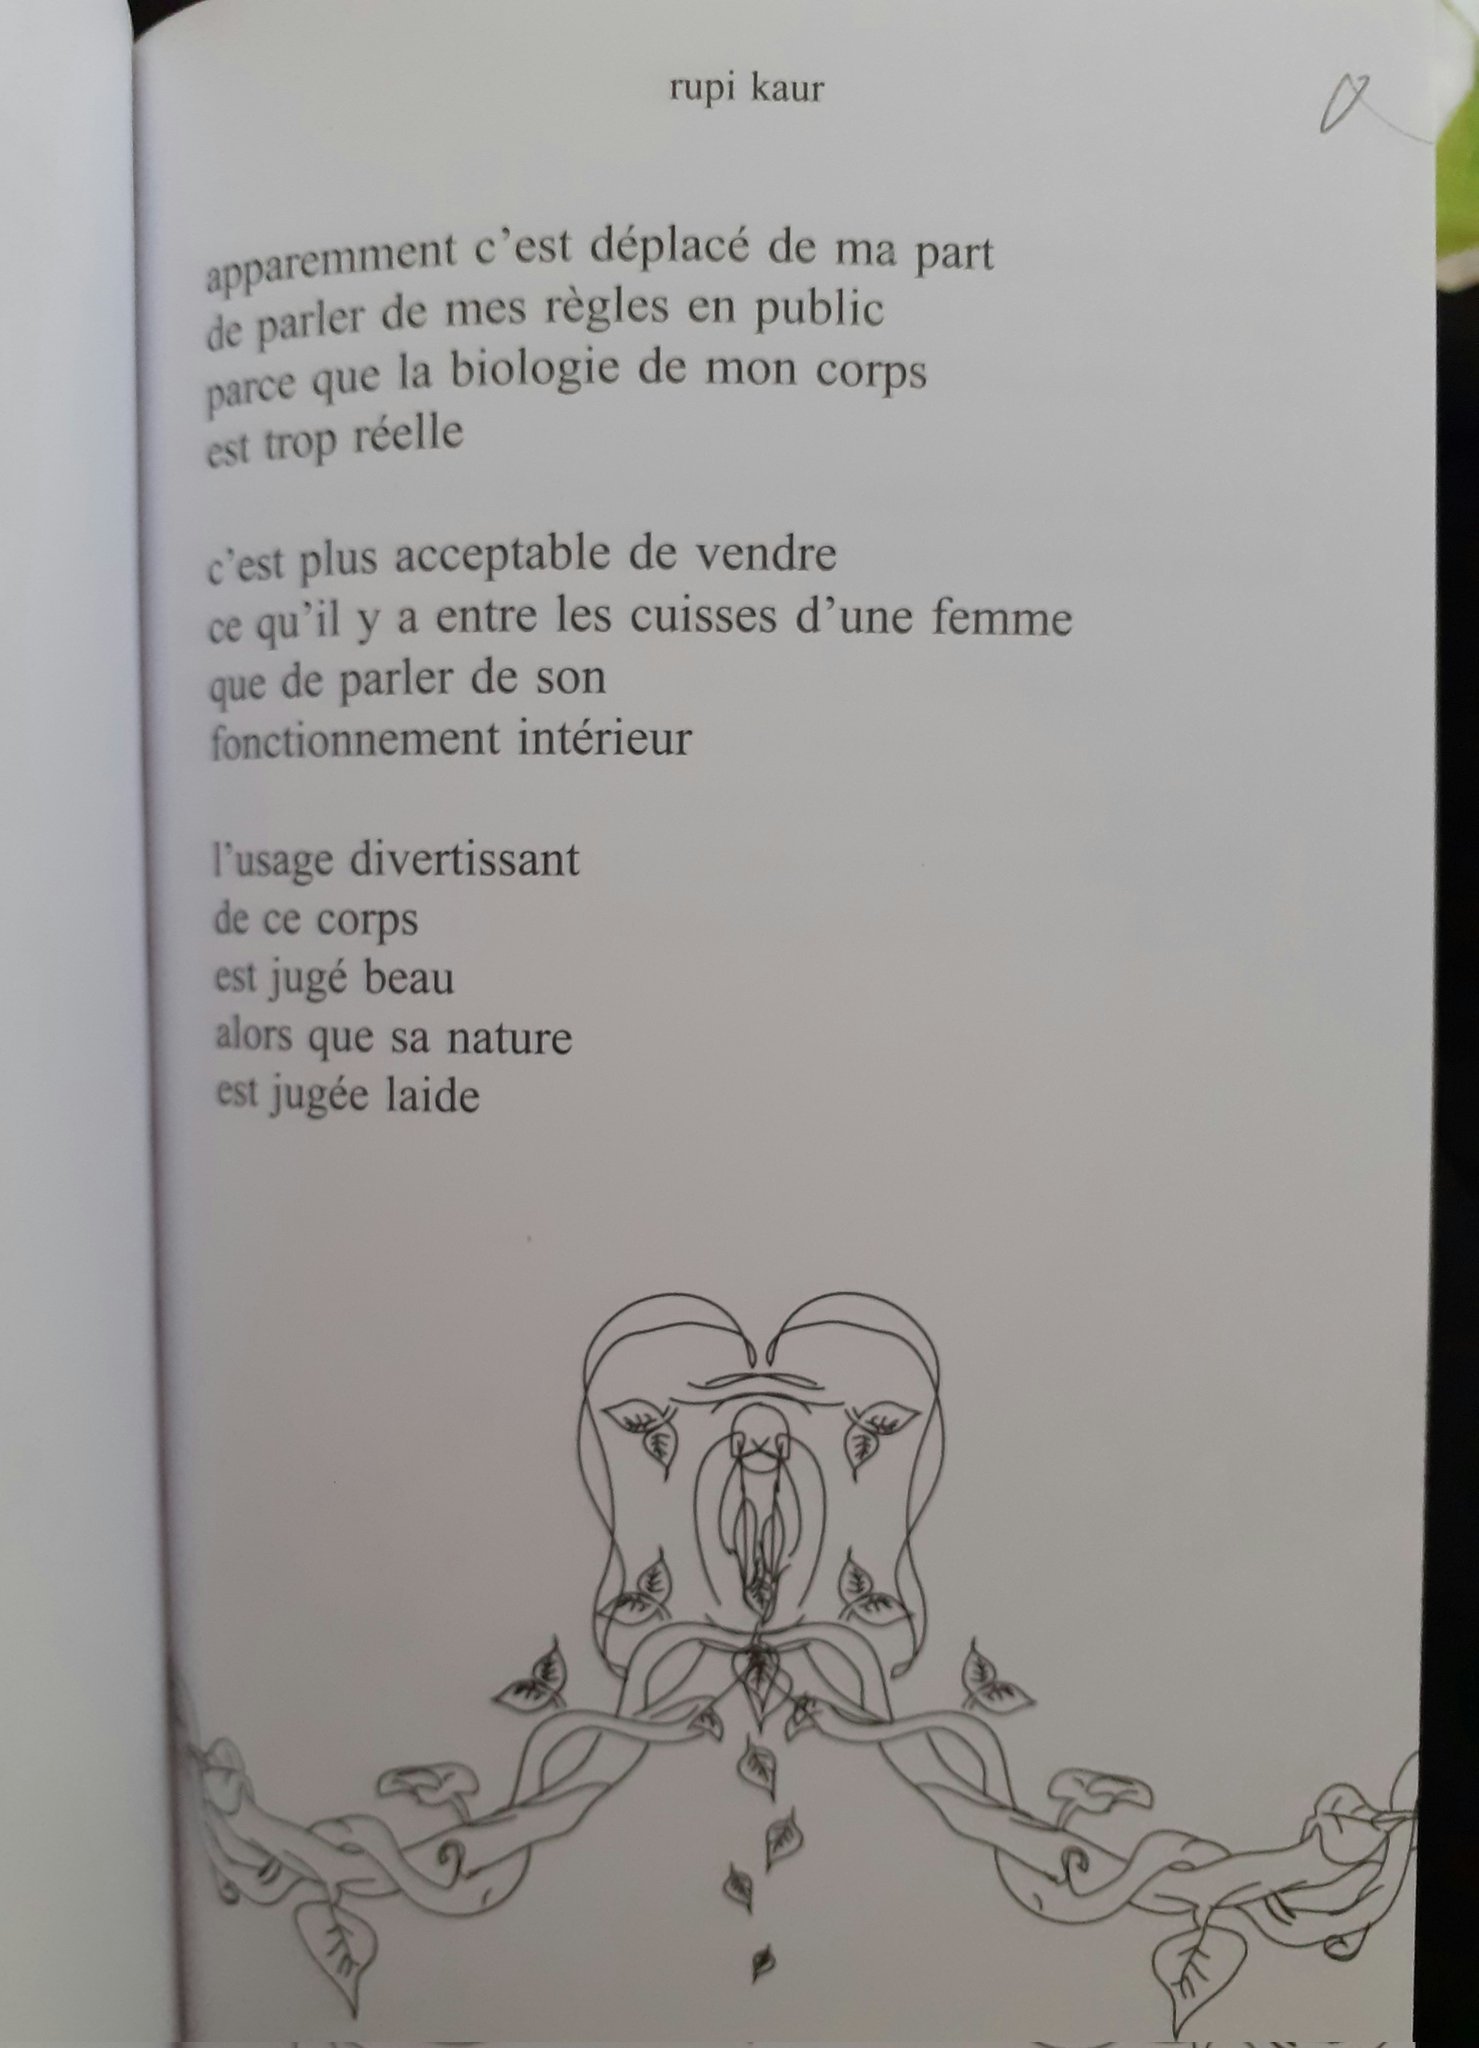 Anna Sennepin on X: 📚 lait et miel, de rupi kaur [Éd. Pocket - 2019]  #Poésie #Féminisme  / X